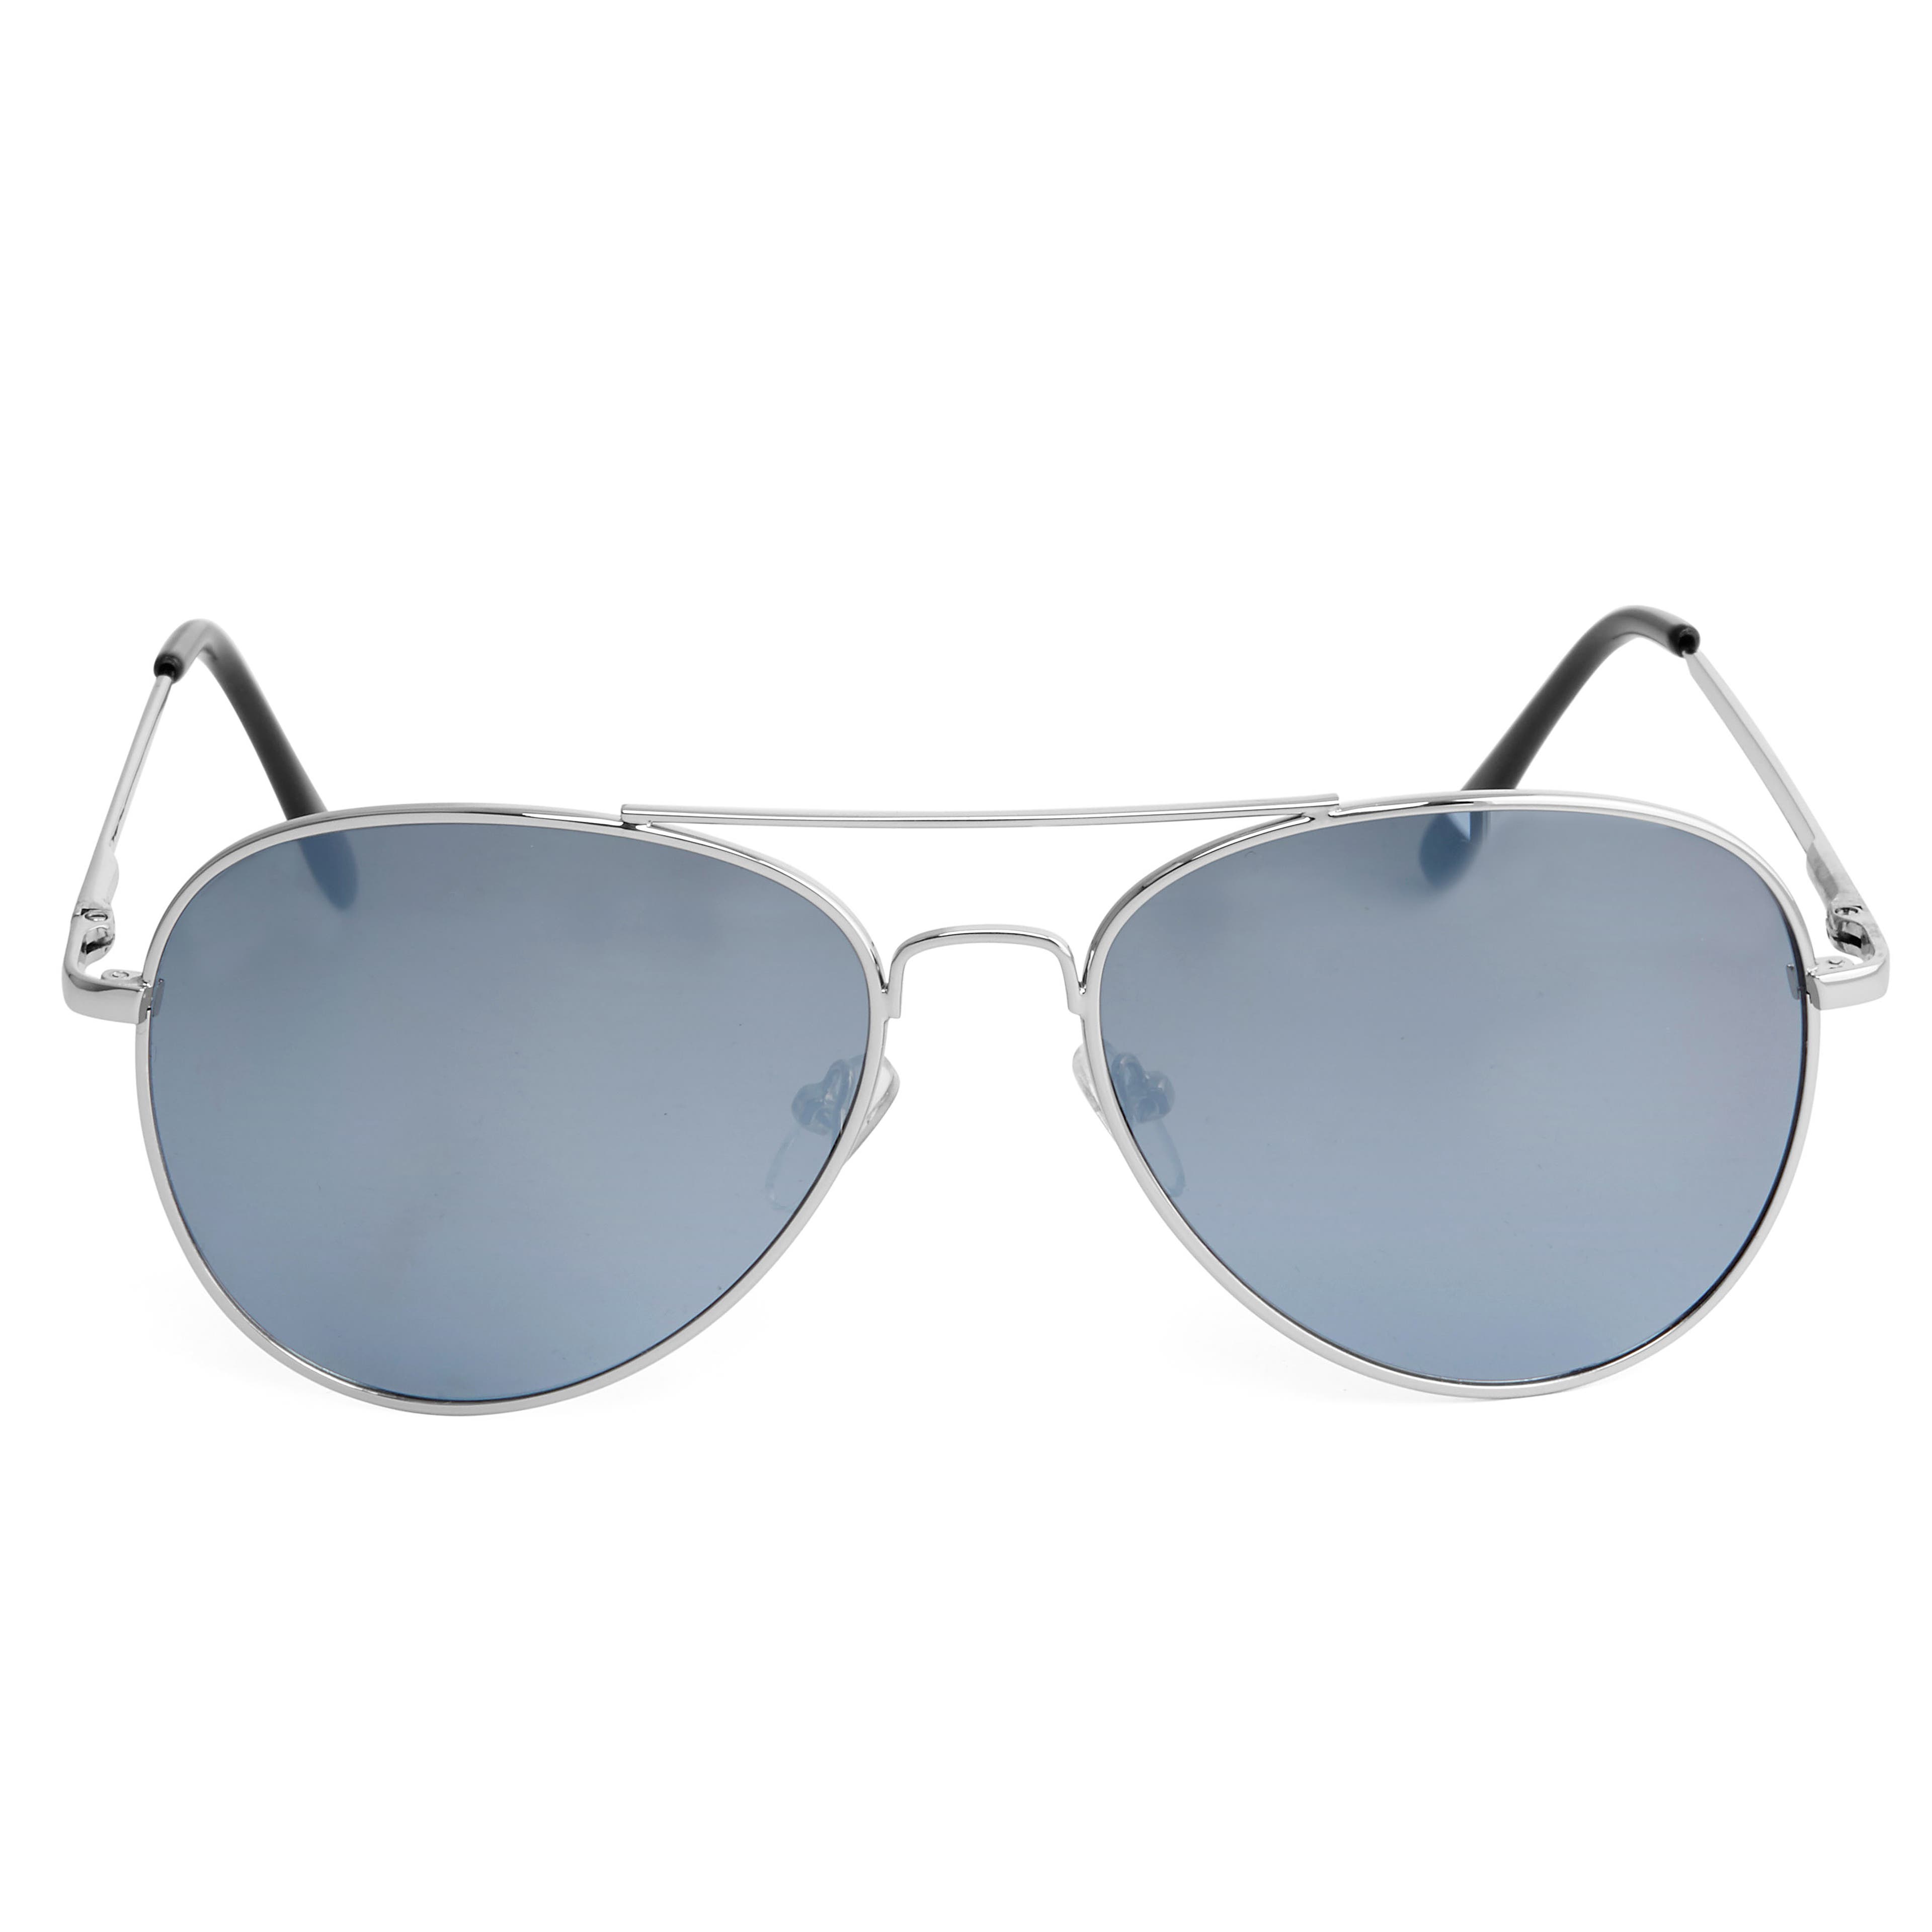 Men's Mirrored Sunglasses